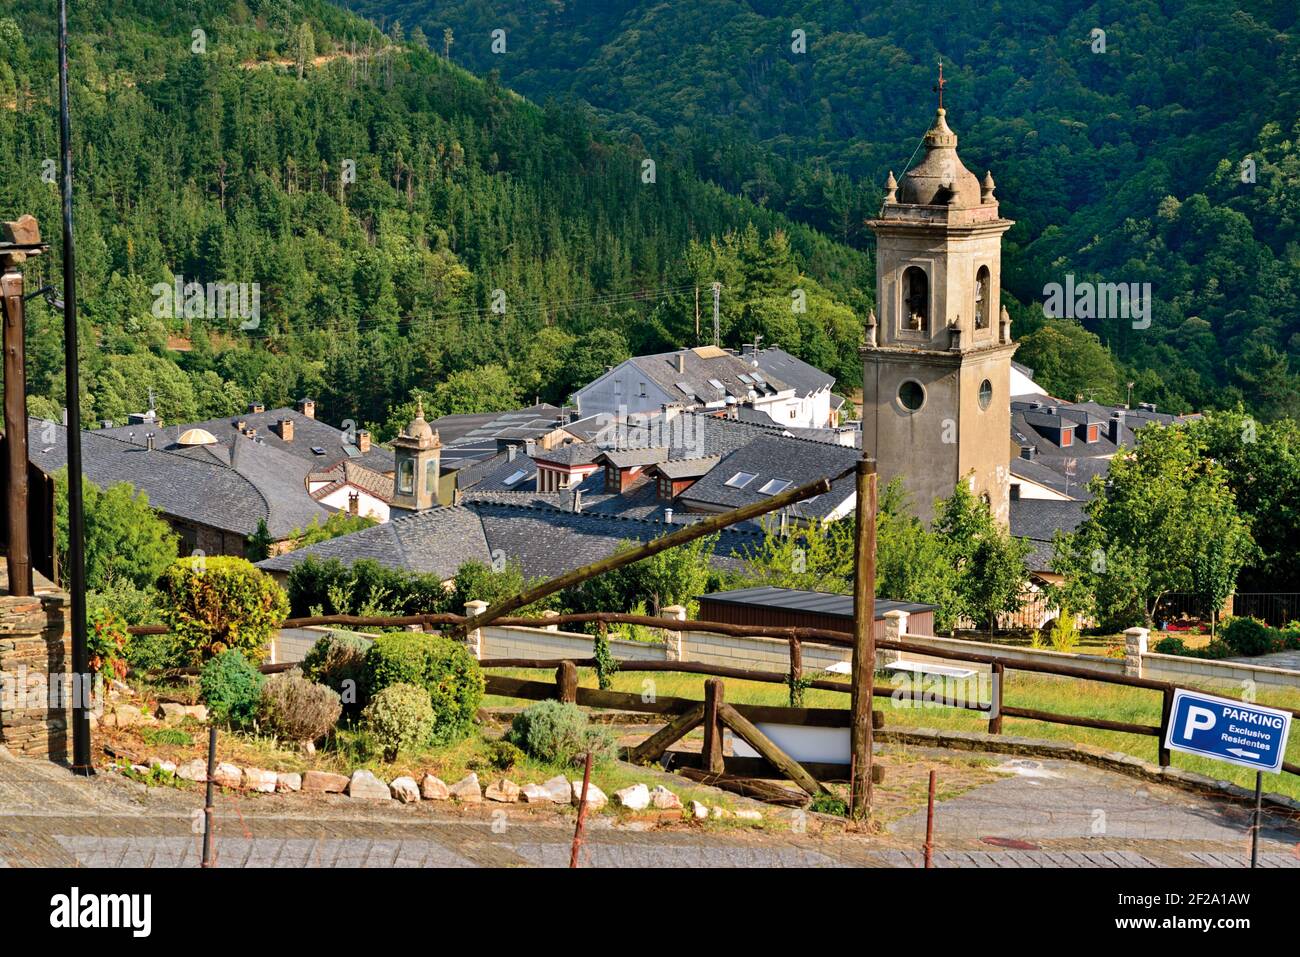 Vista general de pequeño pueblo de montaña con torre central de la iglesia rodeada por bosques verdes Foto de stock